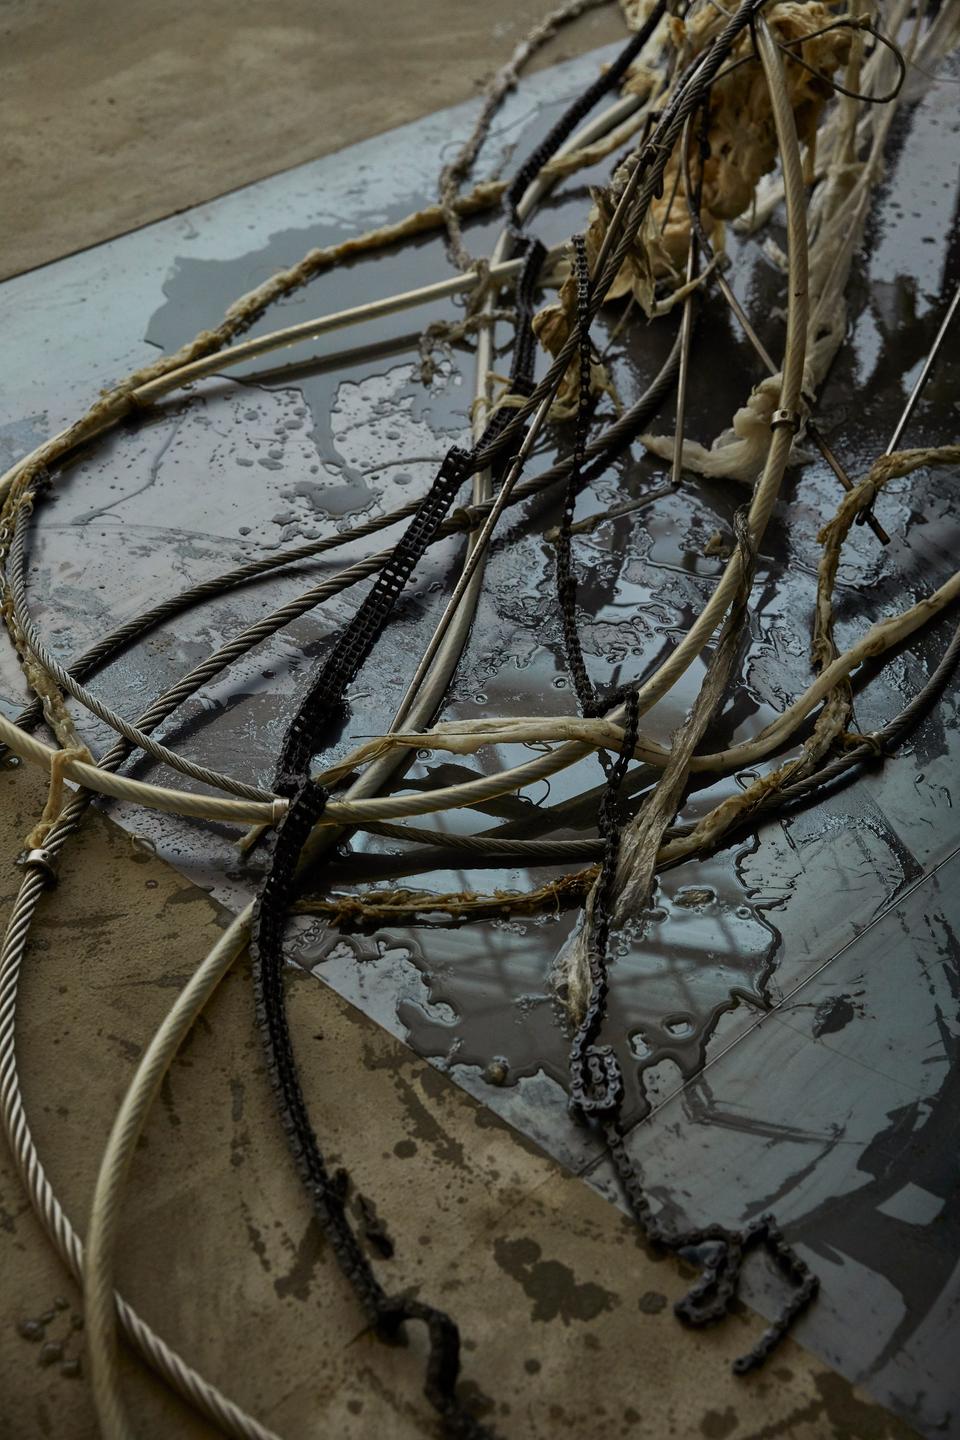 Blick in die Ausstellung: Schmutzige Seilen und Ketten auf dem Boden.